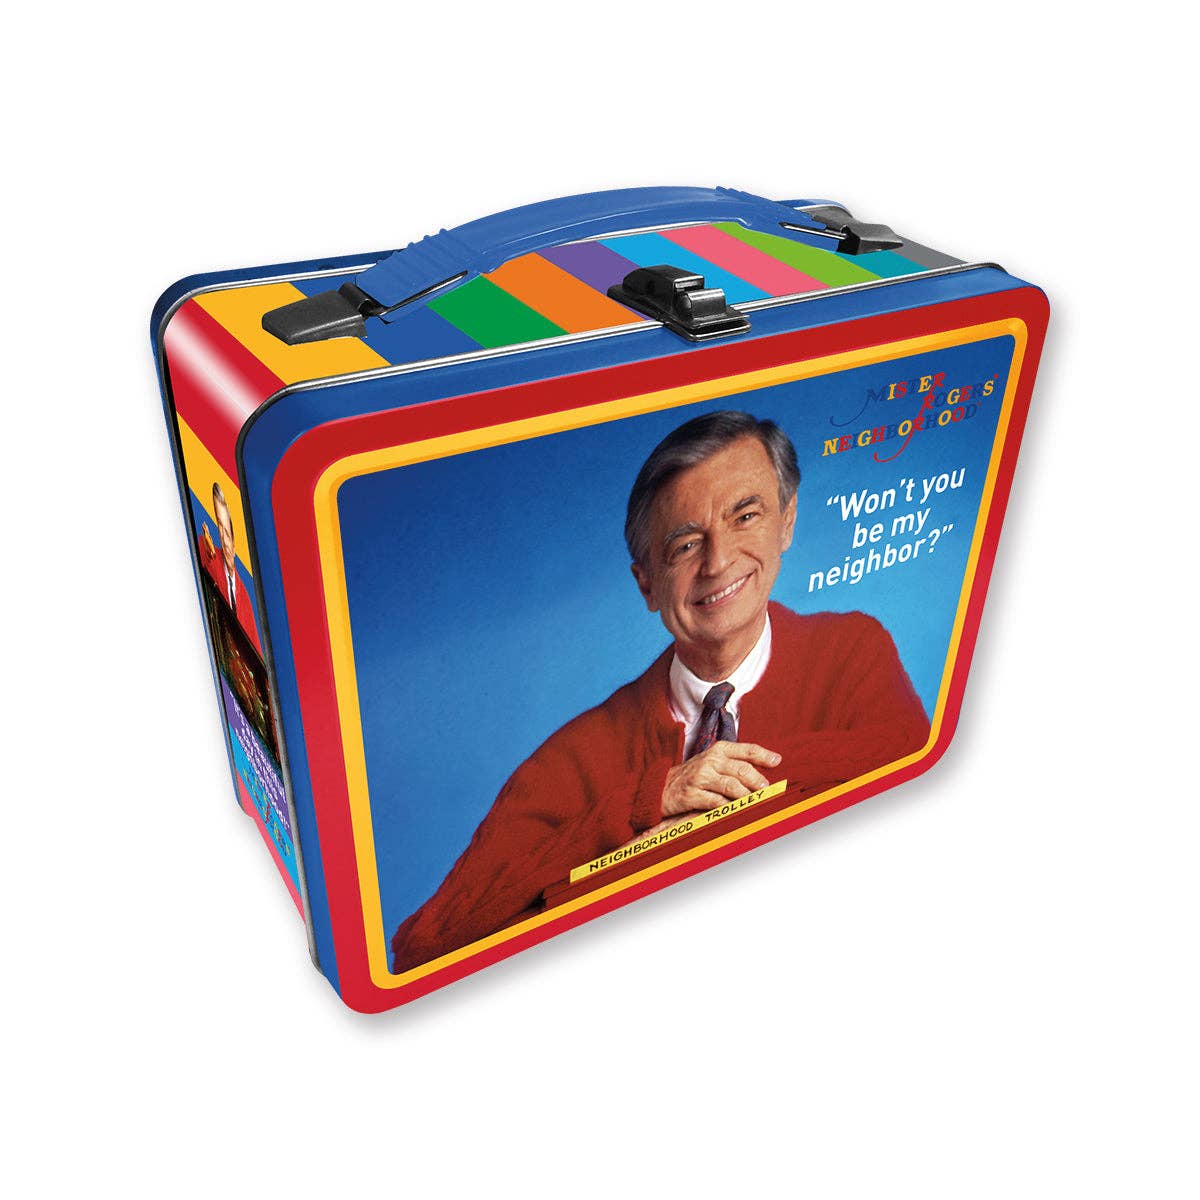 Mr Rogers Fun Box - Hidden Gems Novelty